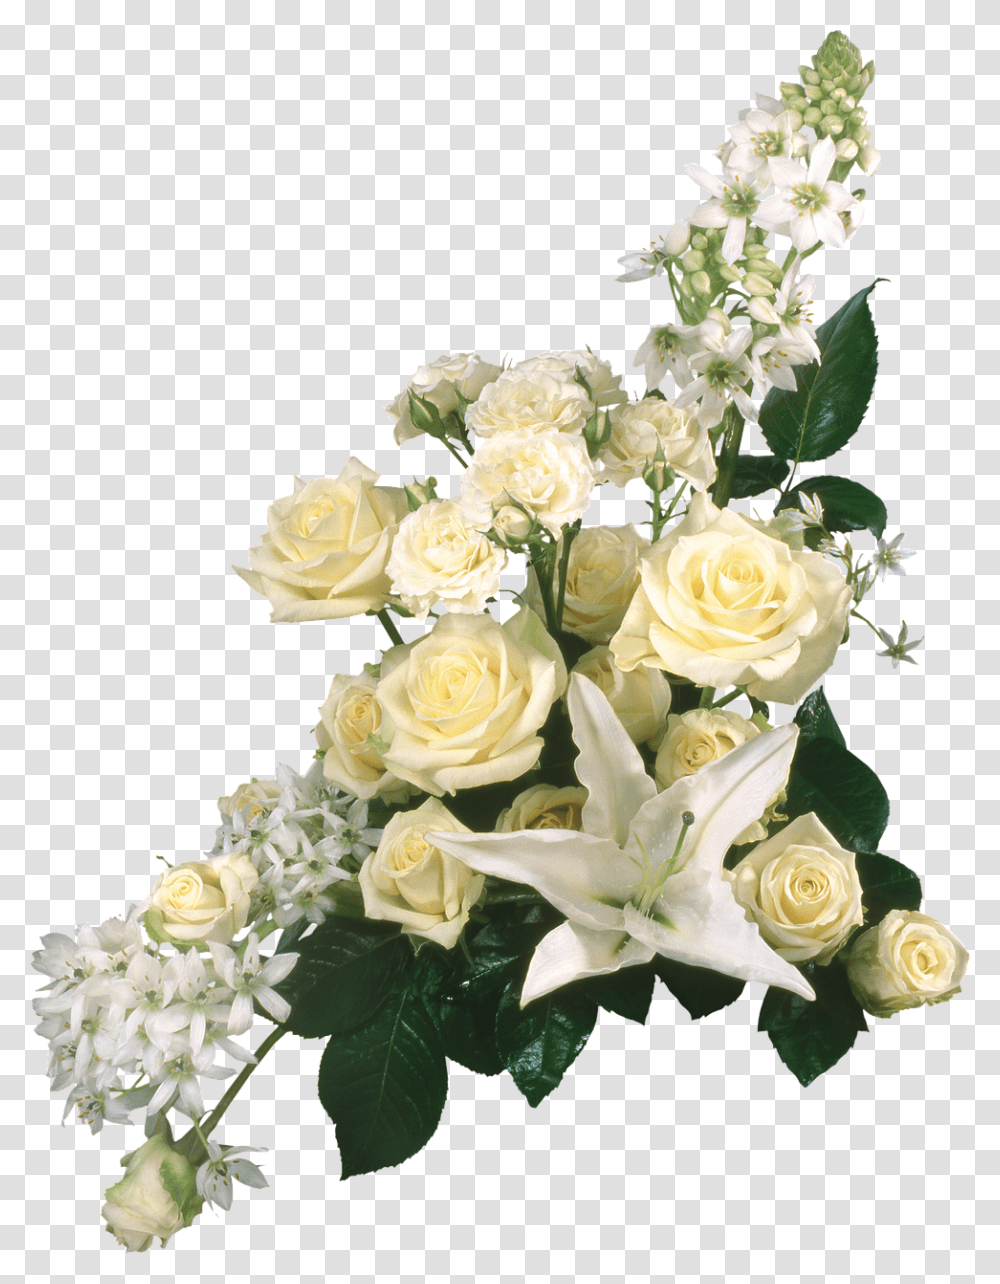 Grave Piece Flowers Free Picture Imagenes De Rosas Blancas En, Plant, Blossom, Flower Bouquet, Flower Arrangement Transparent Png